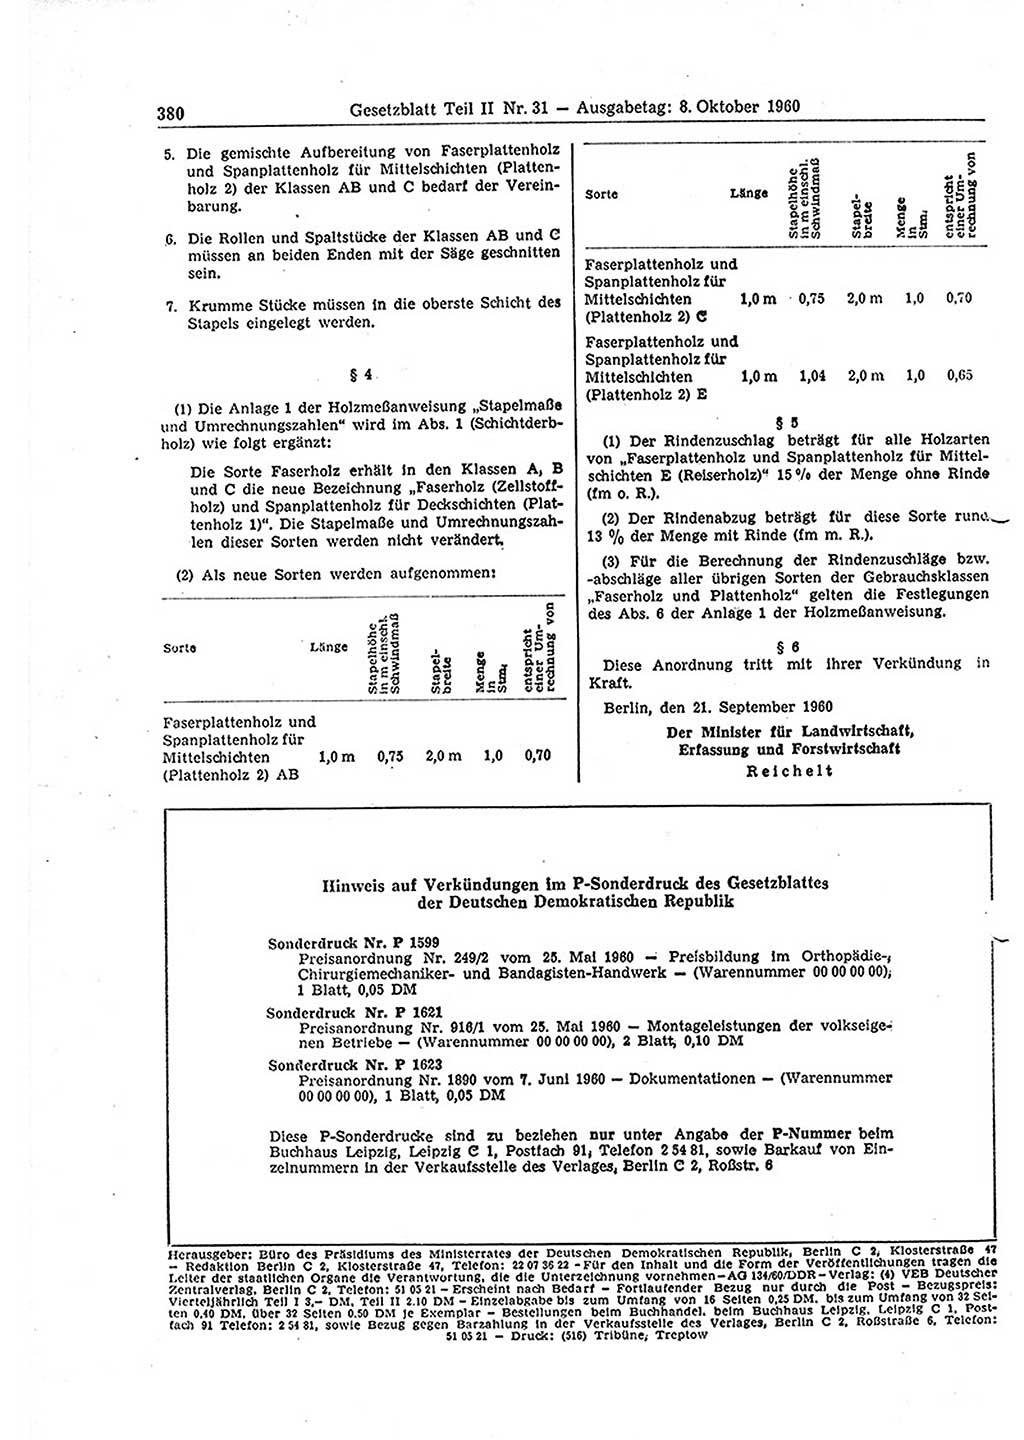 Gesetzblatt (GBl.) der Deutschen Demokratischen Republik (DDR) Teil ⅠⅠ 1960, Seite 380 (GBl. DDR ⅠⅠ 1960, S. 380)